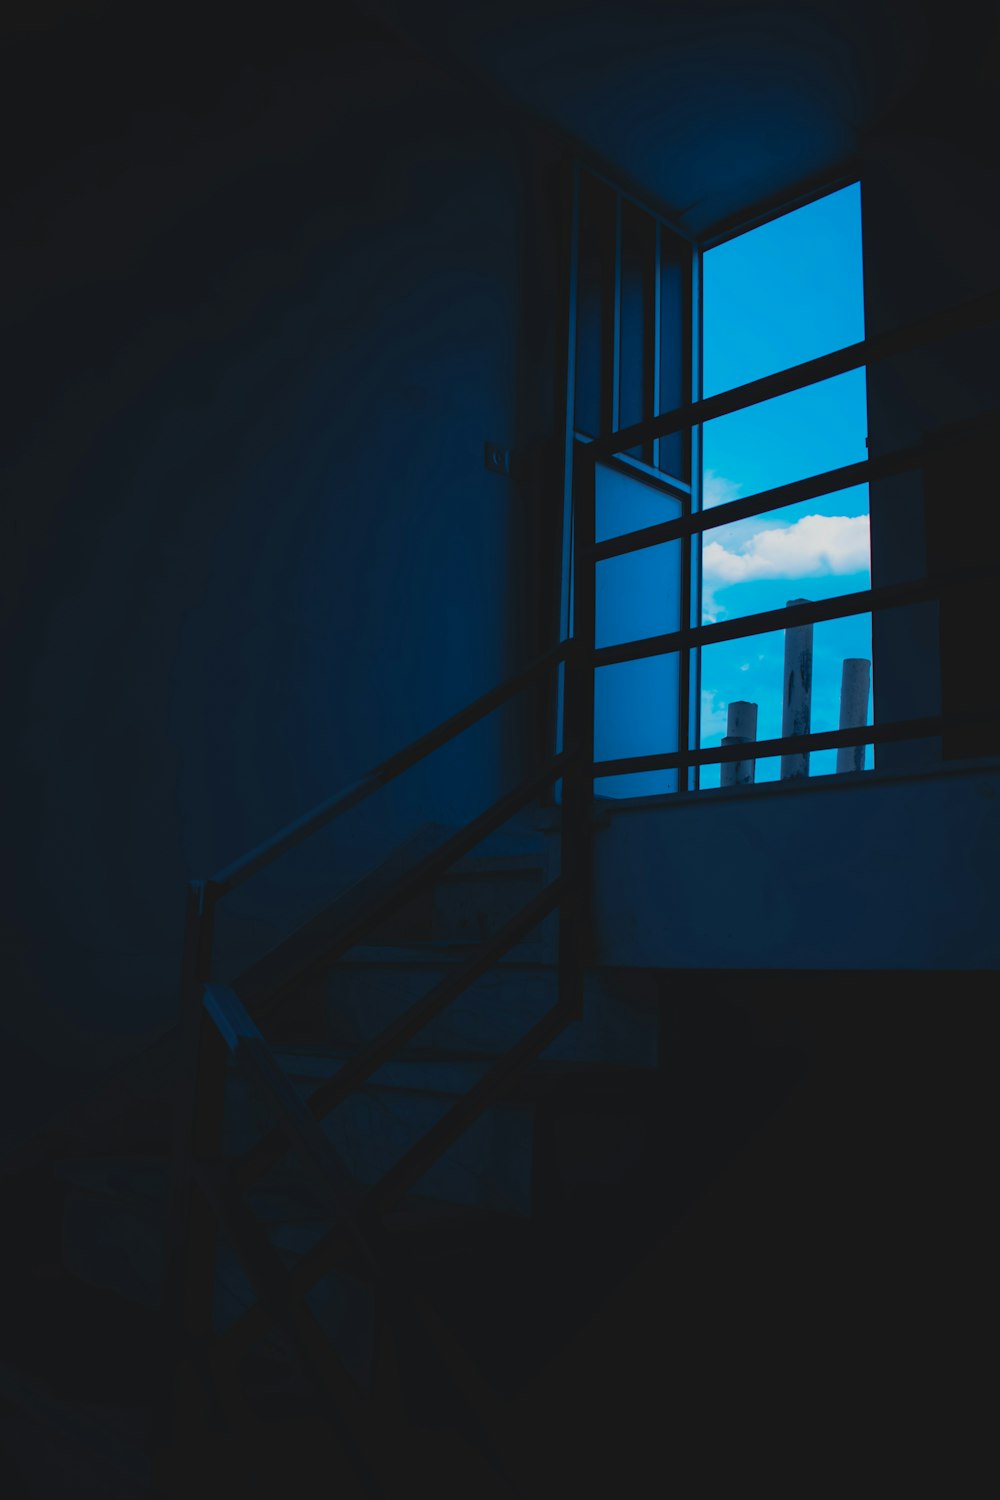 blue metal ladder in dark room